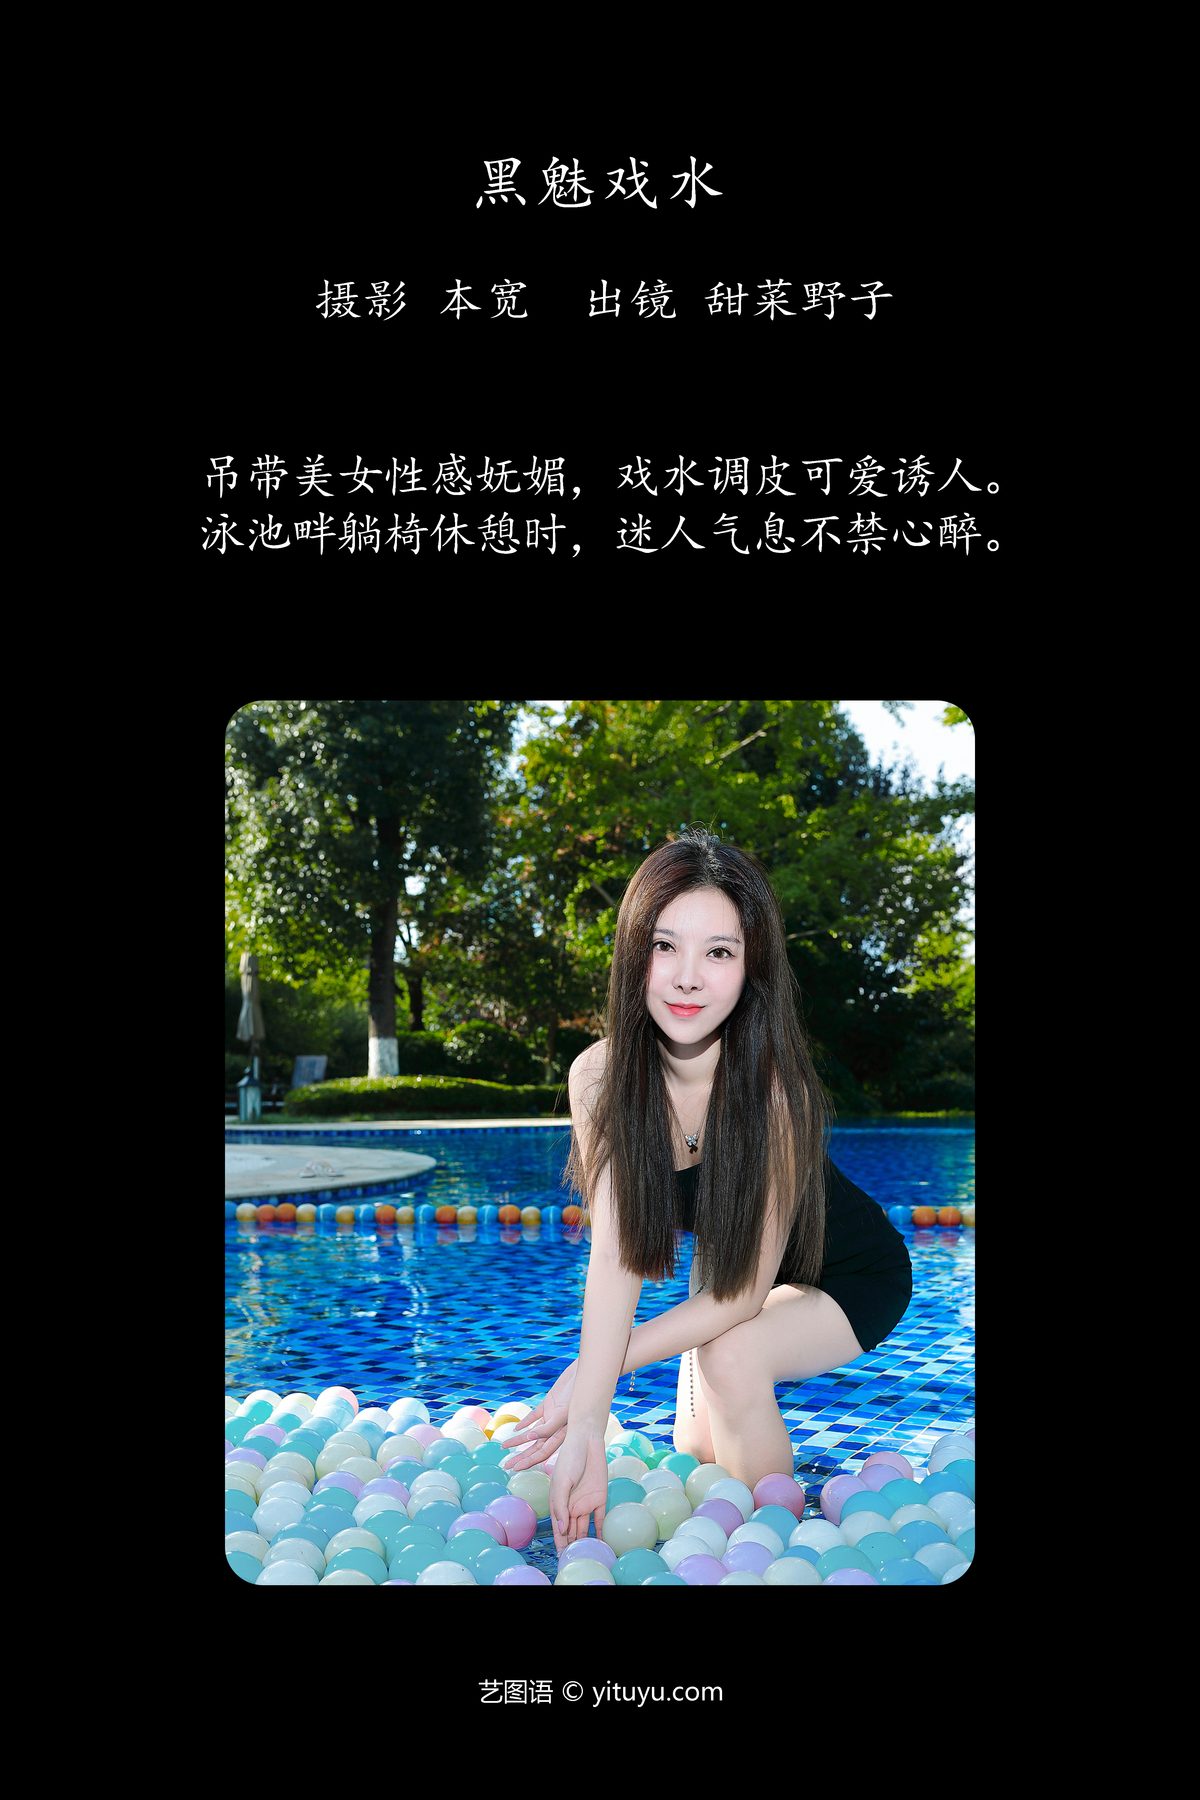 YiTuYu艺图语 Vol 5558 Tian Cai Ye Zi 0001 4058010647.jpg